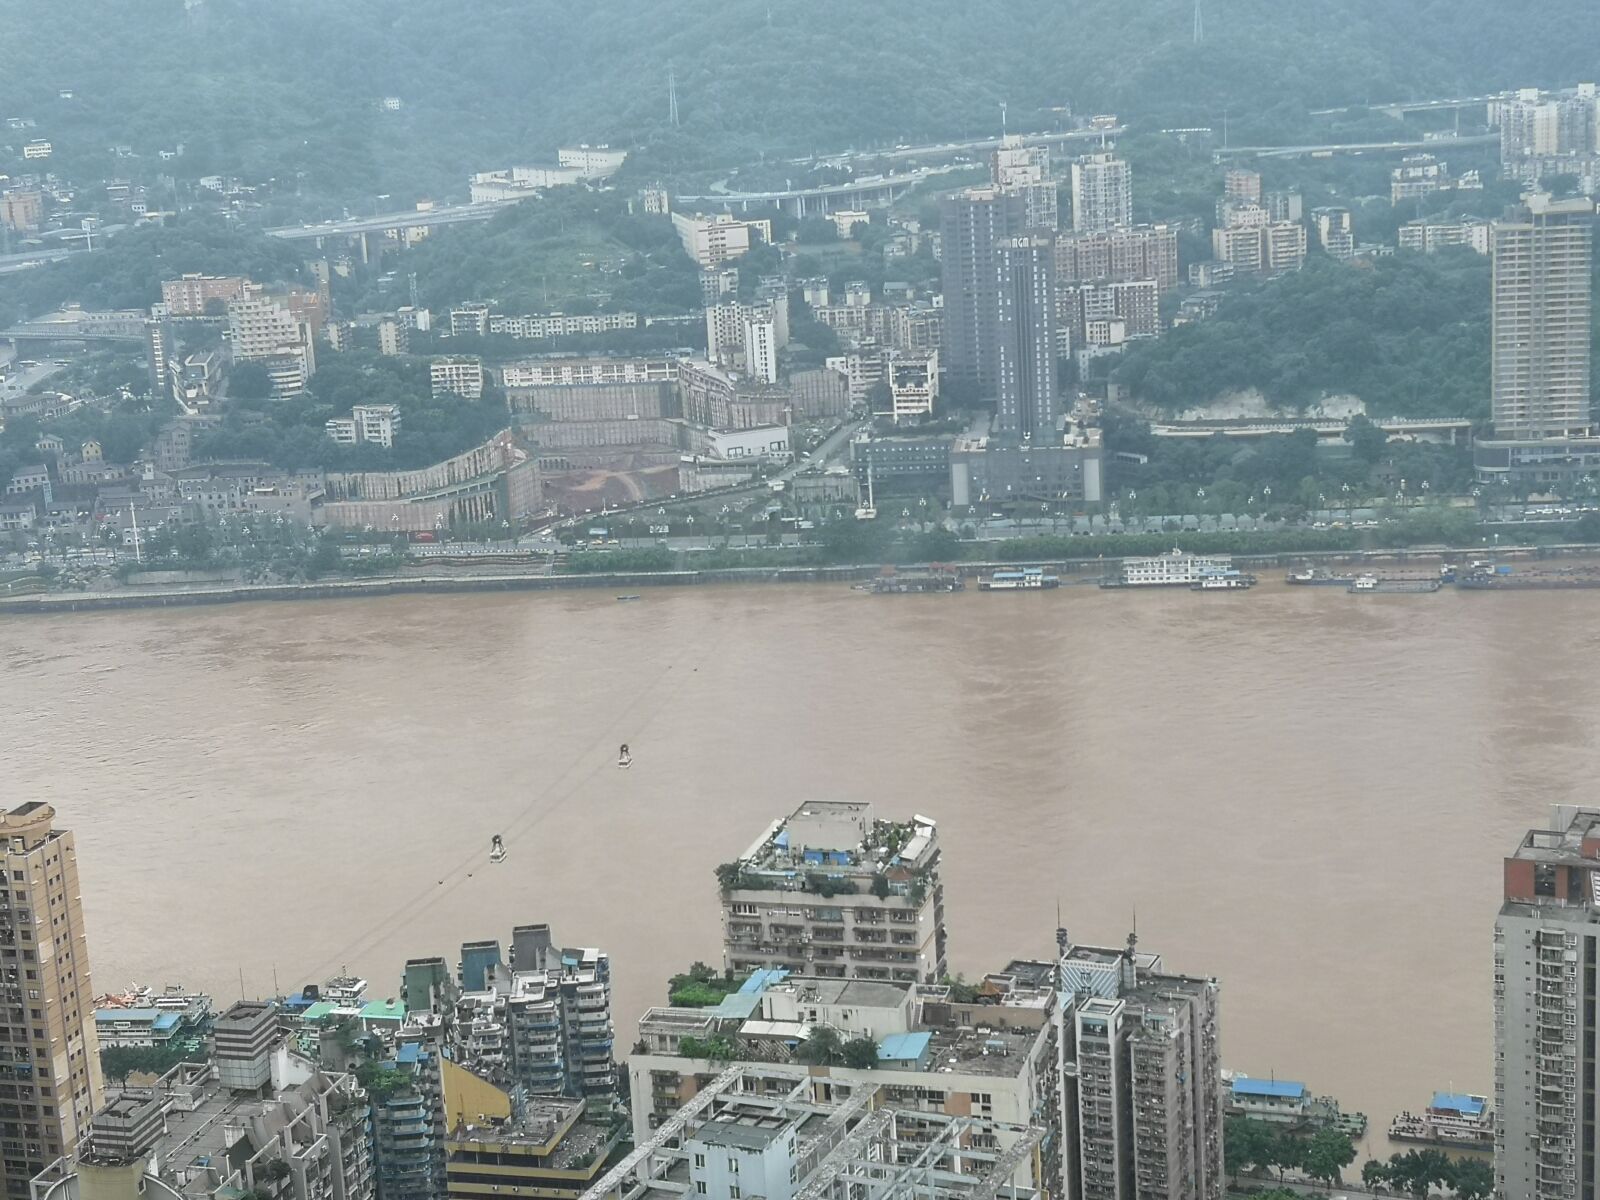 HUAWEI P20 Pro sample photo. Chongqing, the yangtze river photography